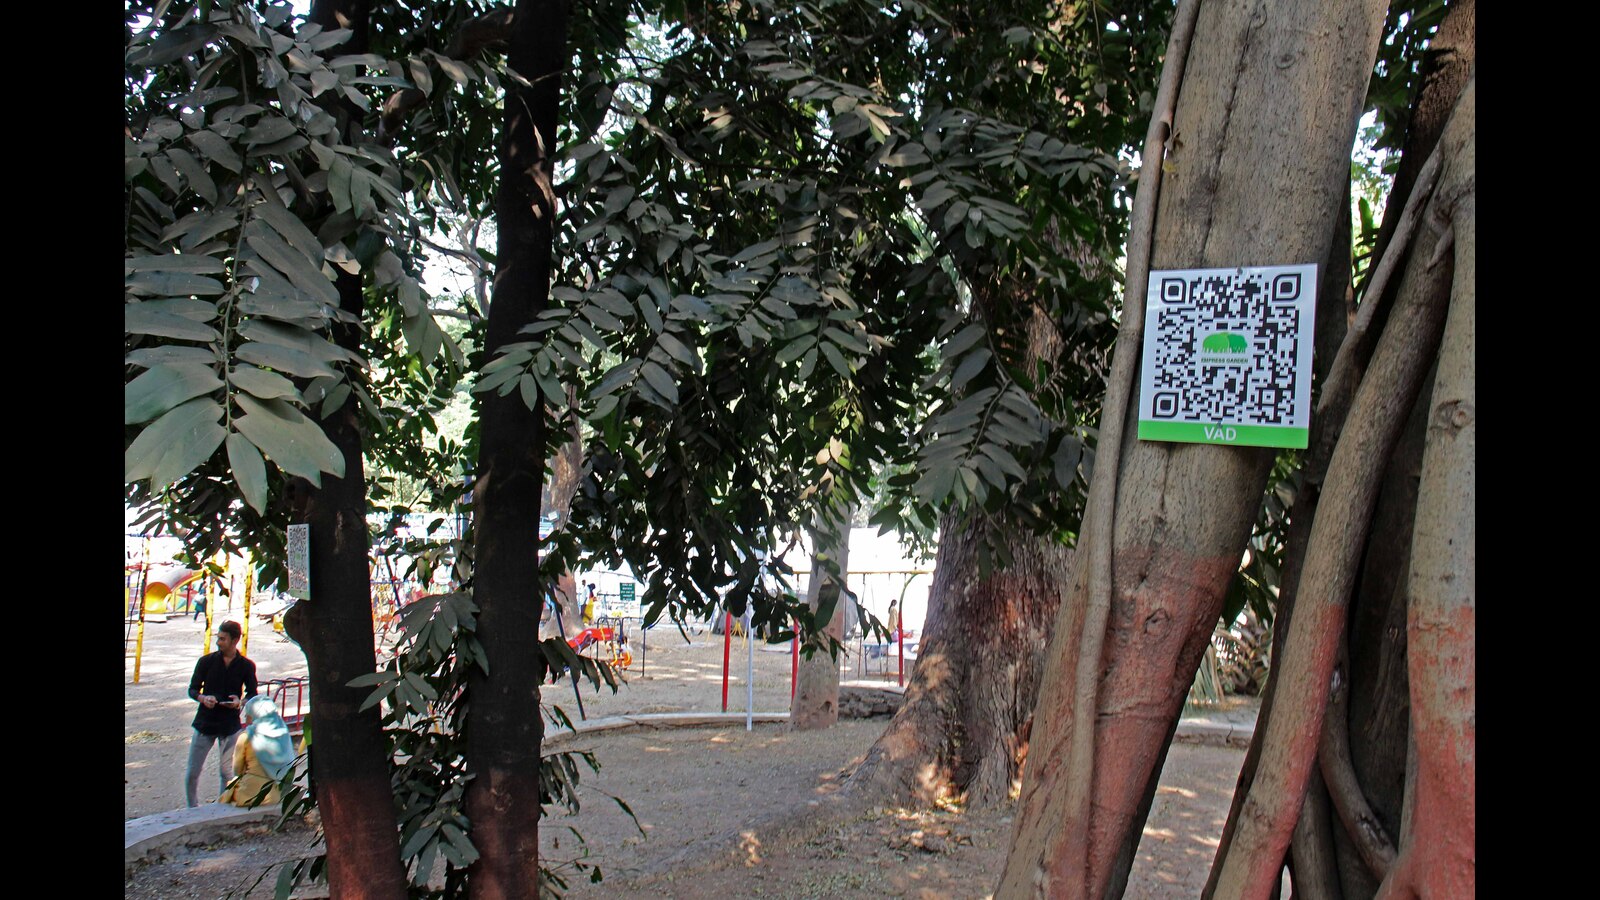 अब, एम्प्रेस गार्डन में पेड़ों के बारे में जानने के लिए क्यूआर कोड स्कैन करें